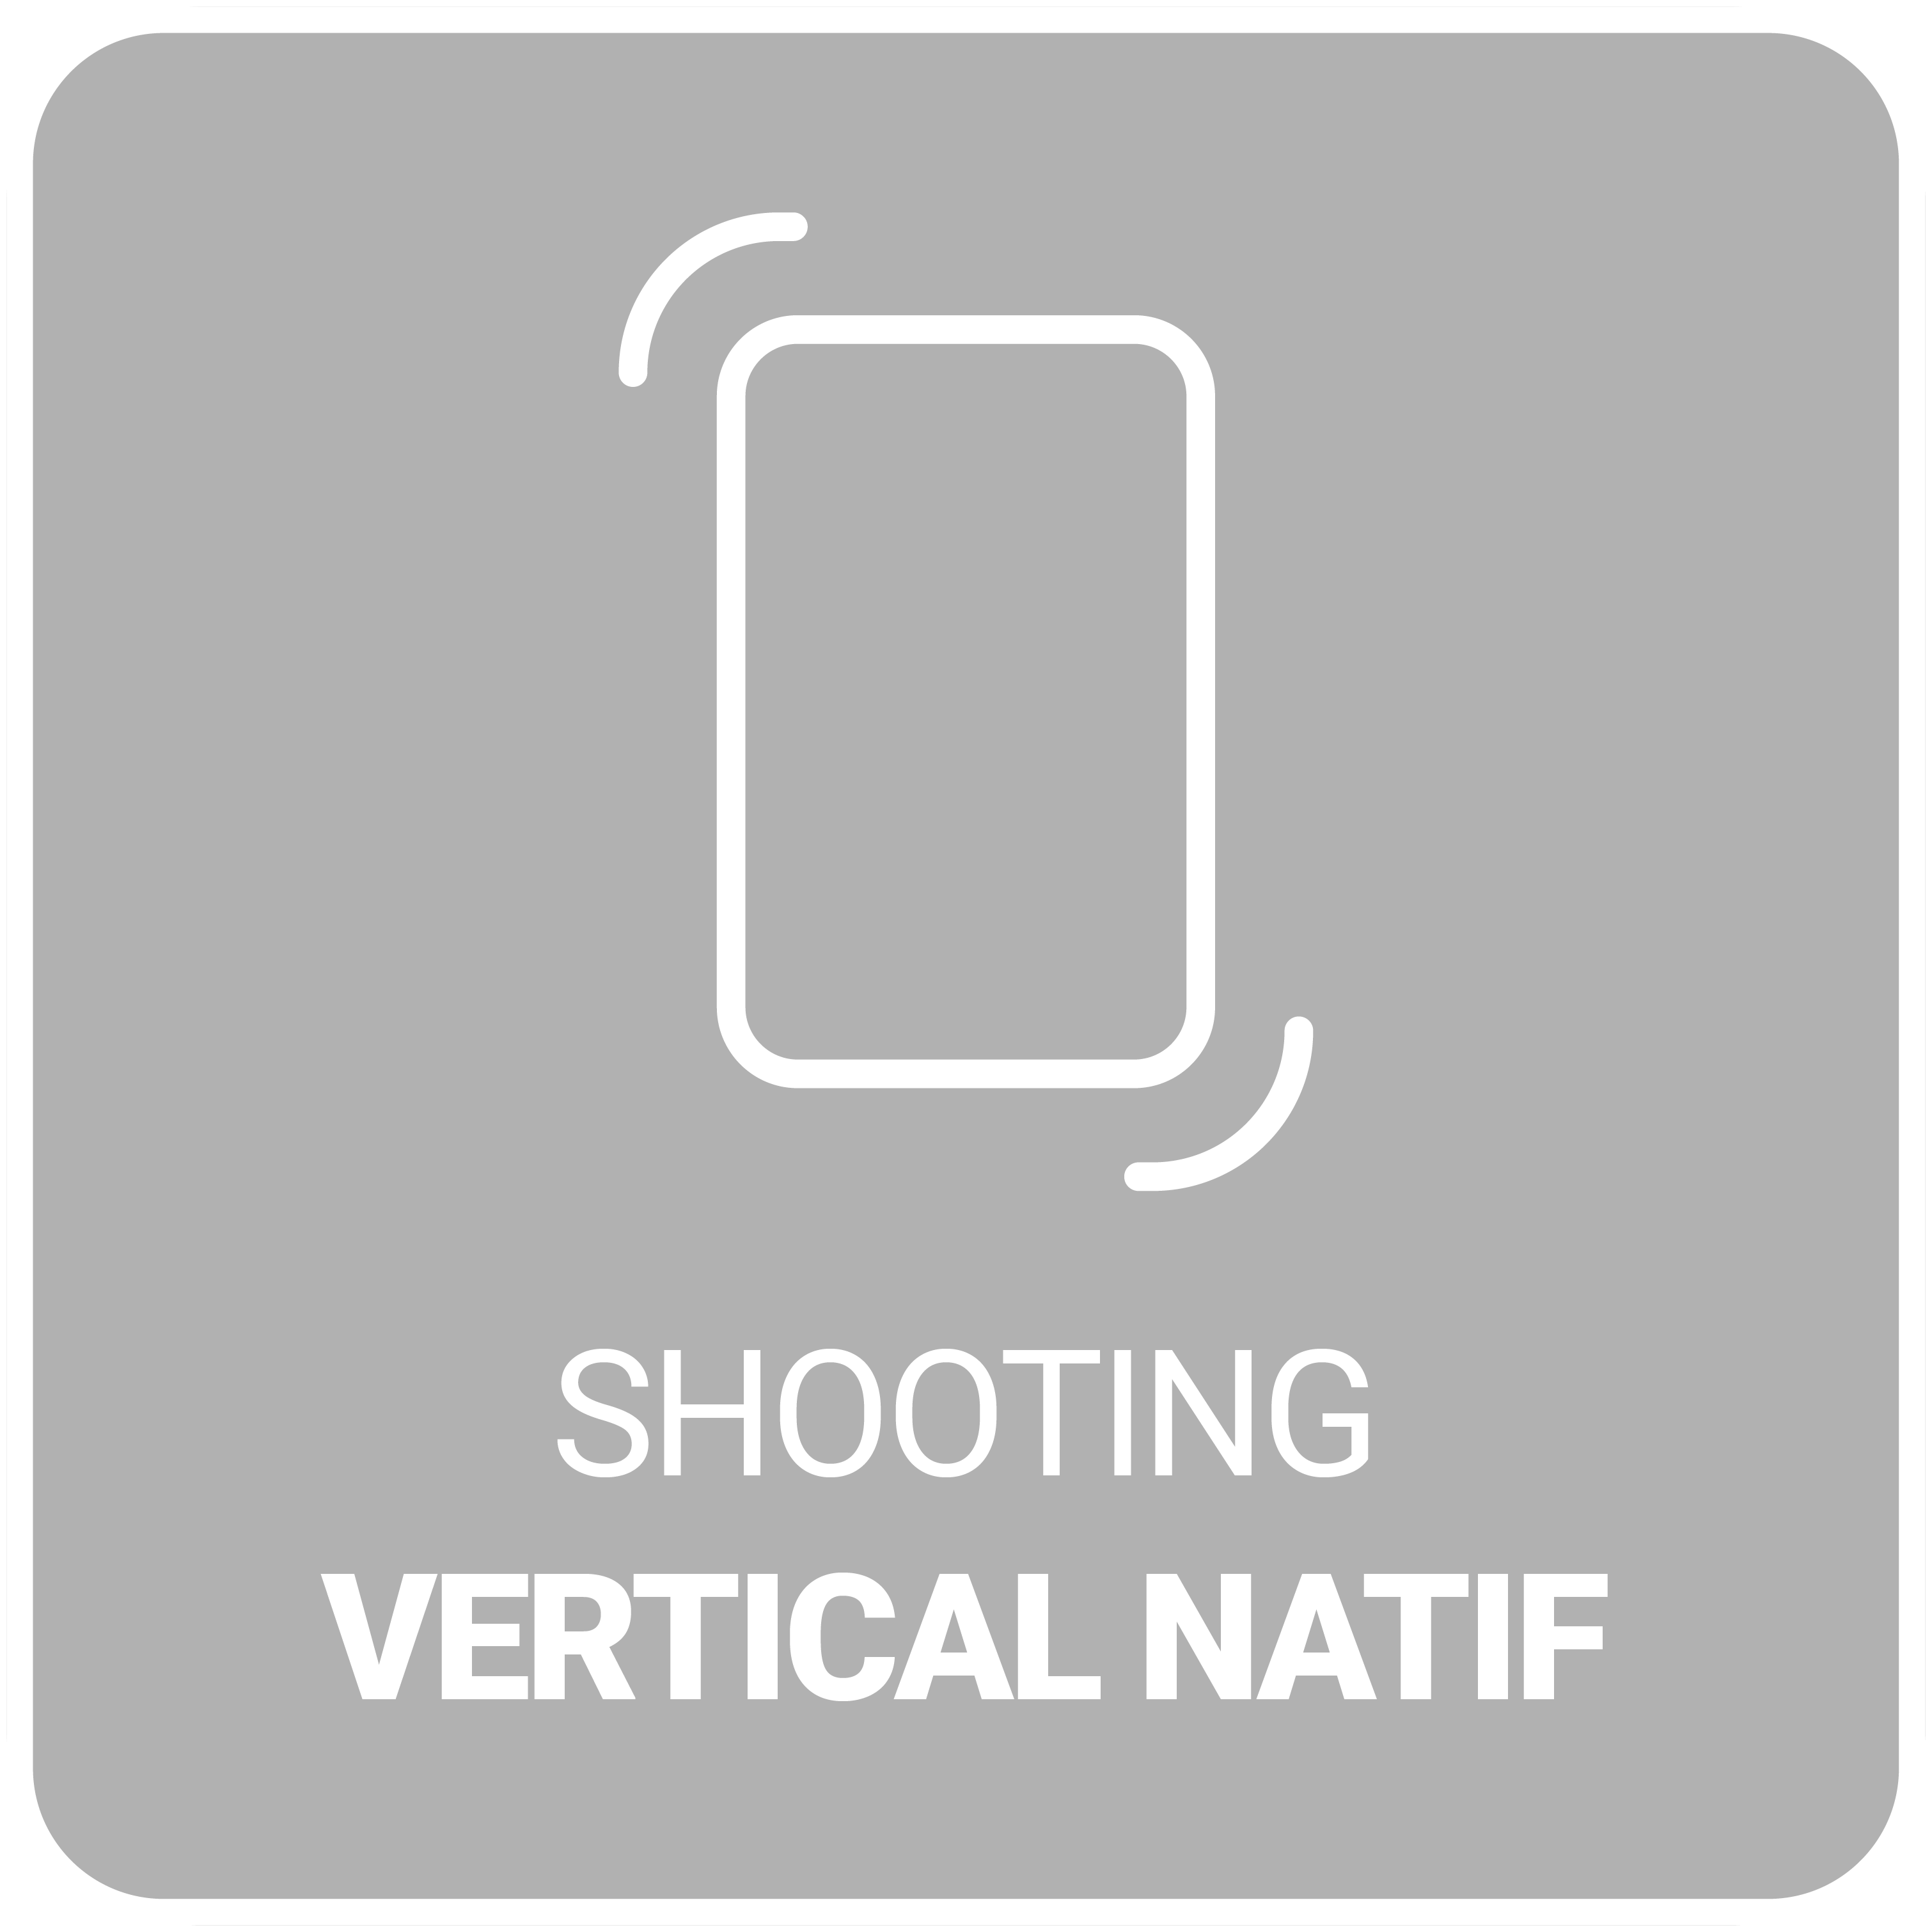 SHOOTING VERTICAL